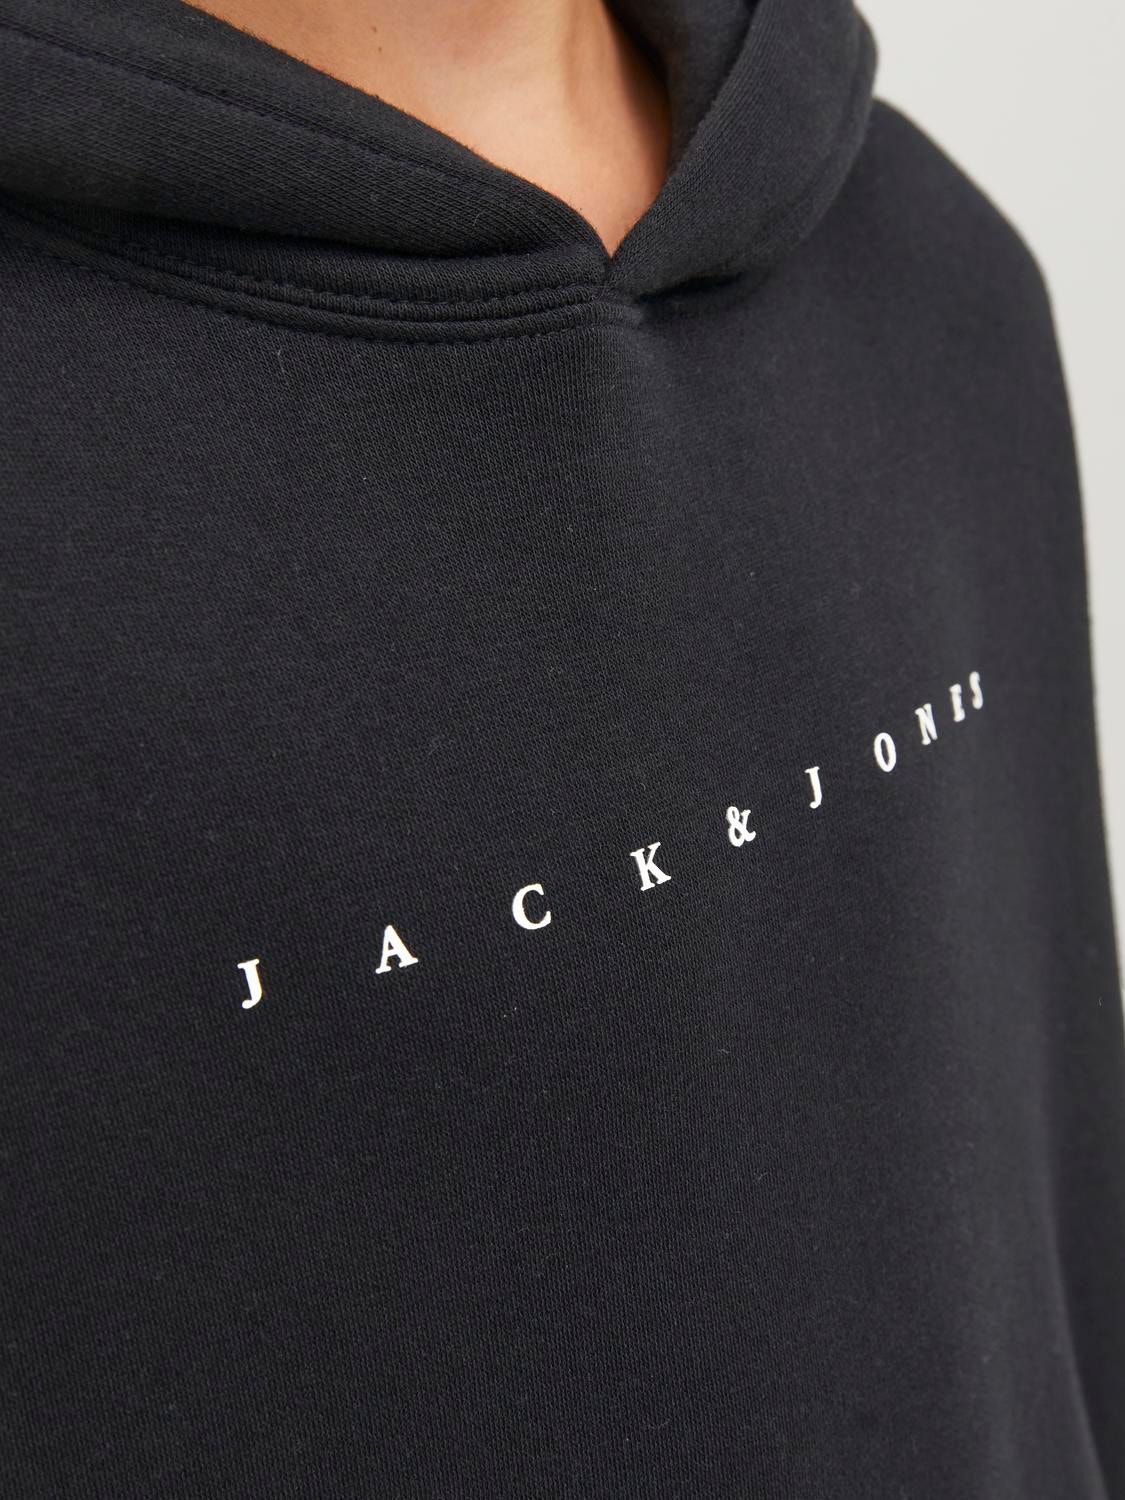 Jack & Jones Logo Hoodie For boys -Black - 12237468